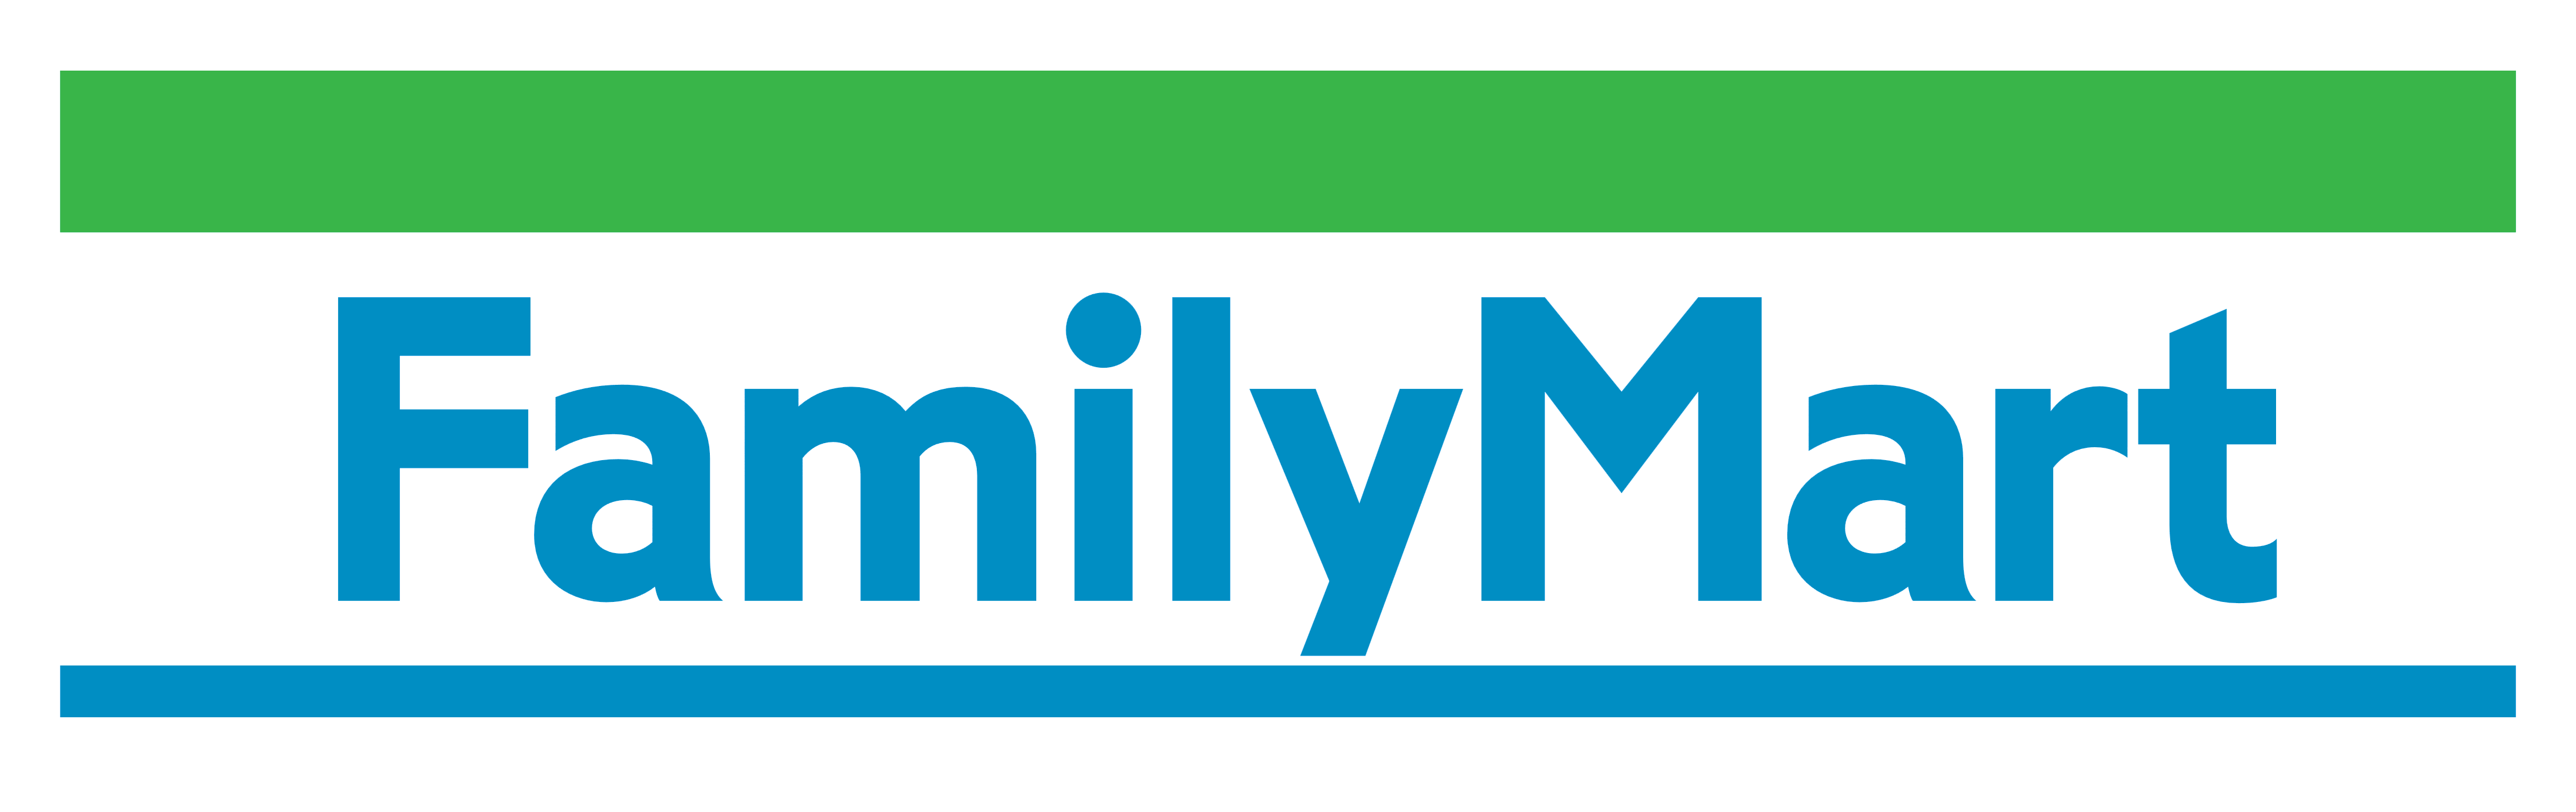 Family Mart Japan. Family Mart Thailand. Udn logo. Family mart